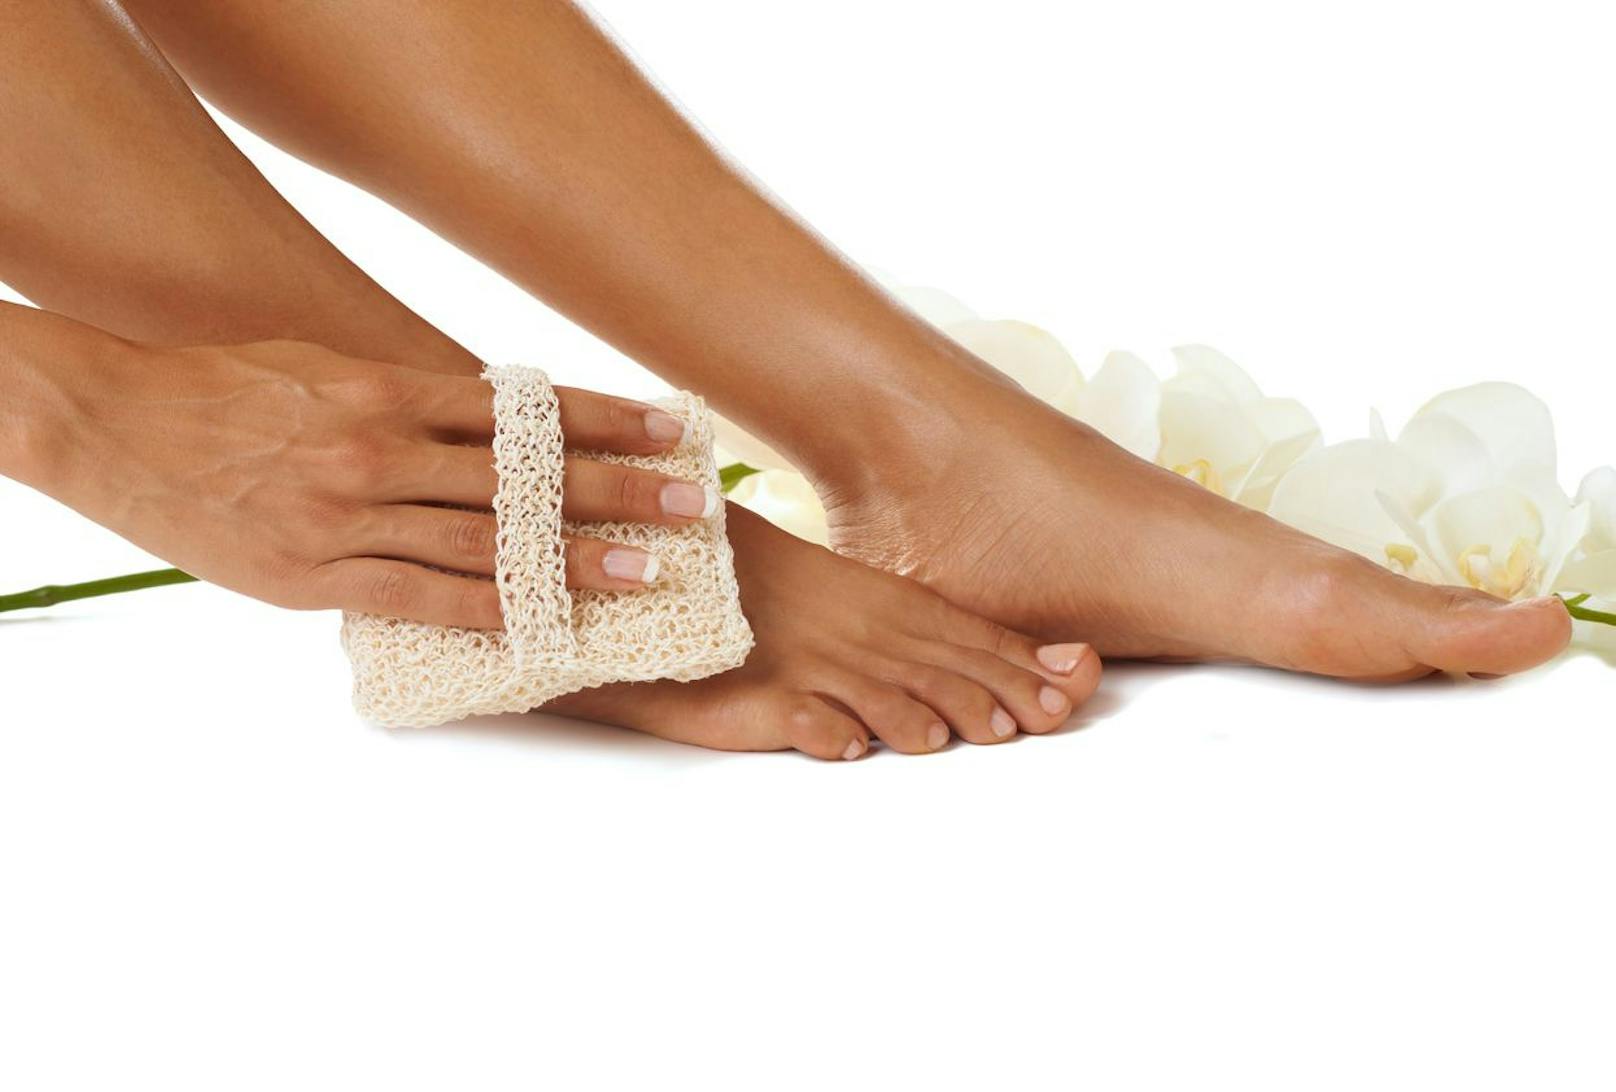 Eine richtige Verwöhnung erlebst du durch ein angenehmes Fußpeeling, damit du selbst deine Füße verschönern kannst.